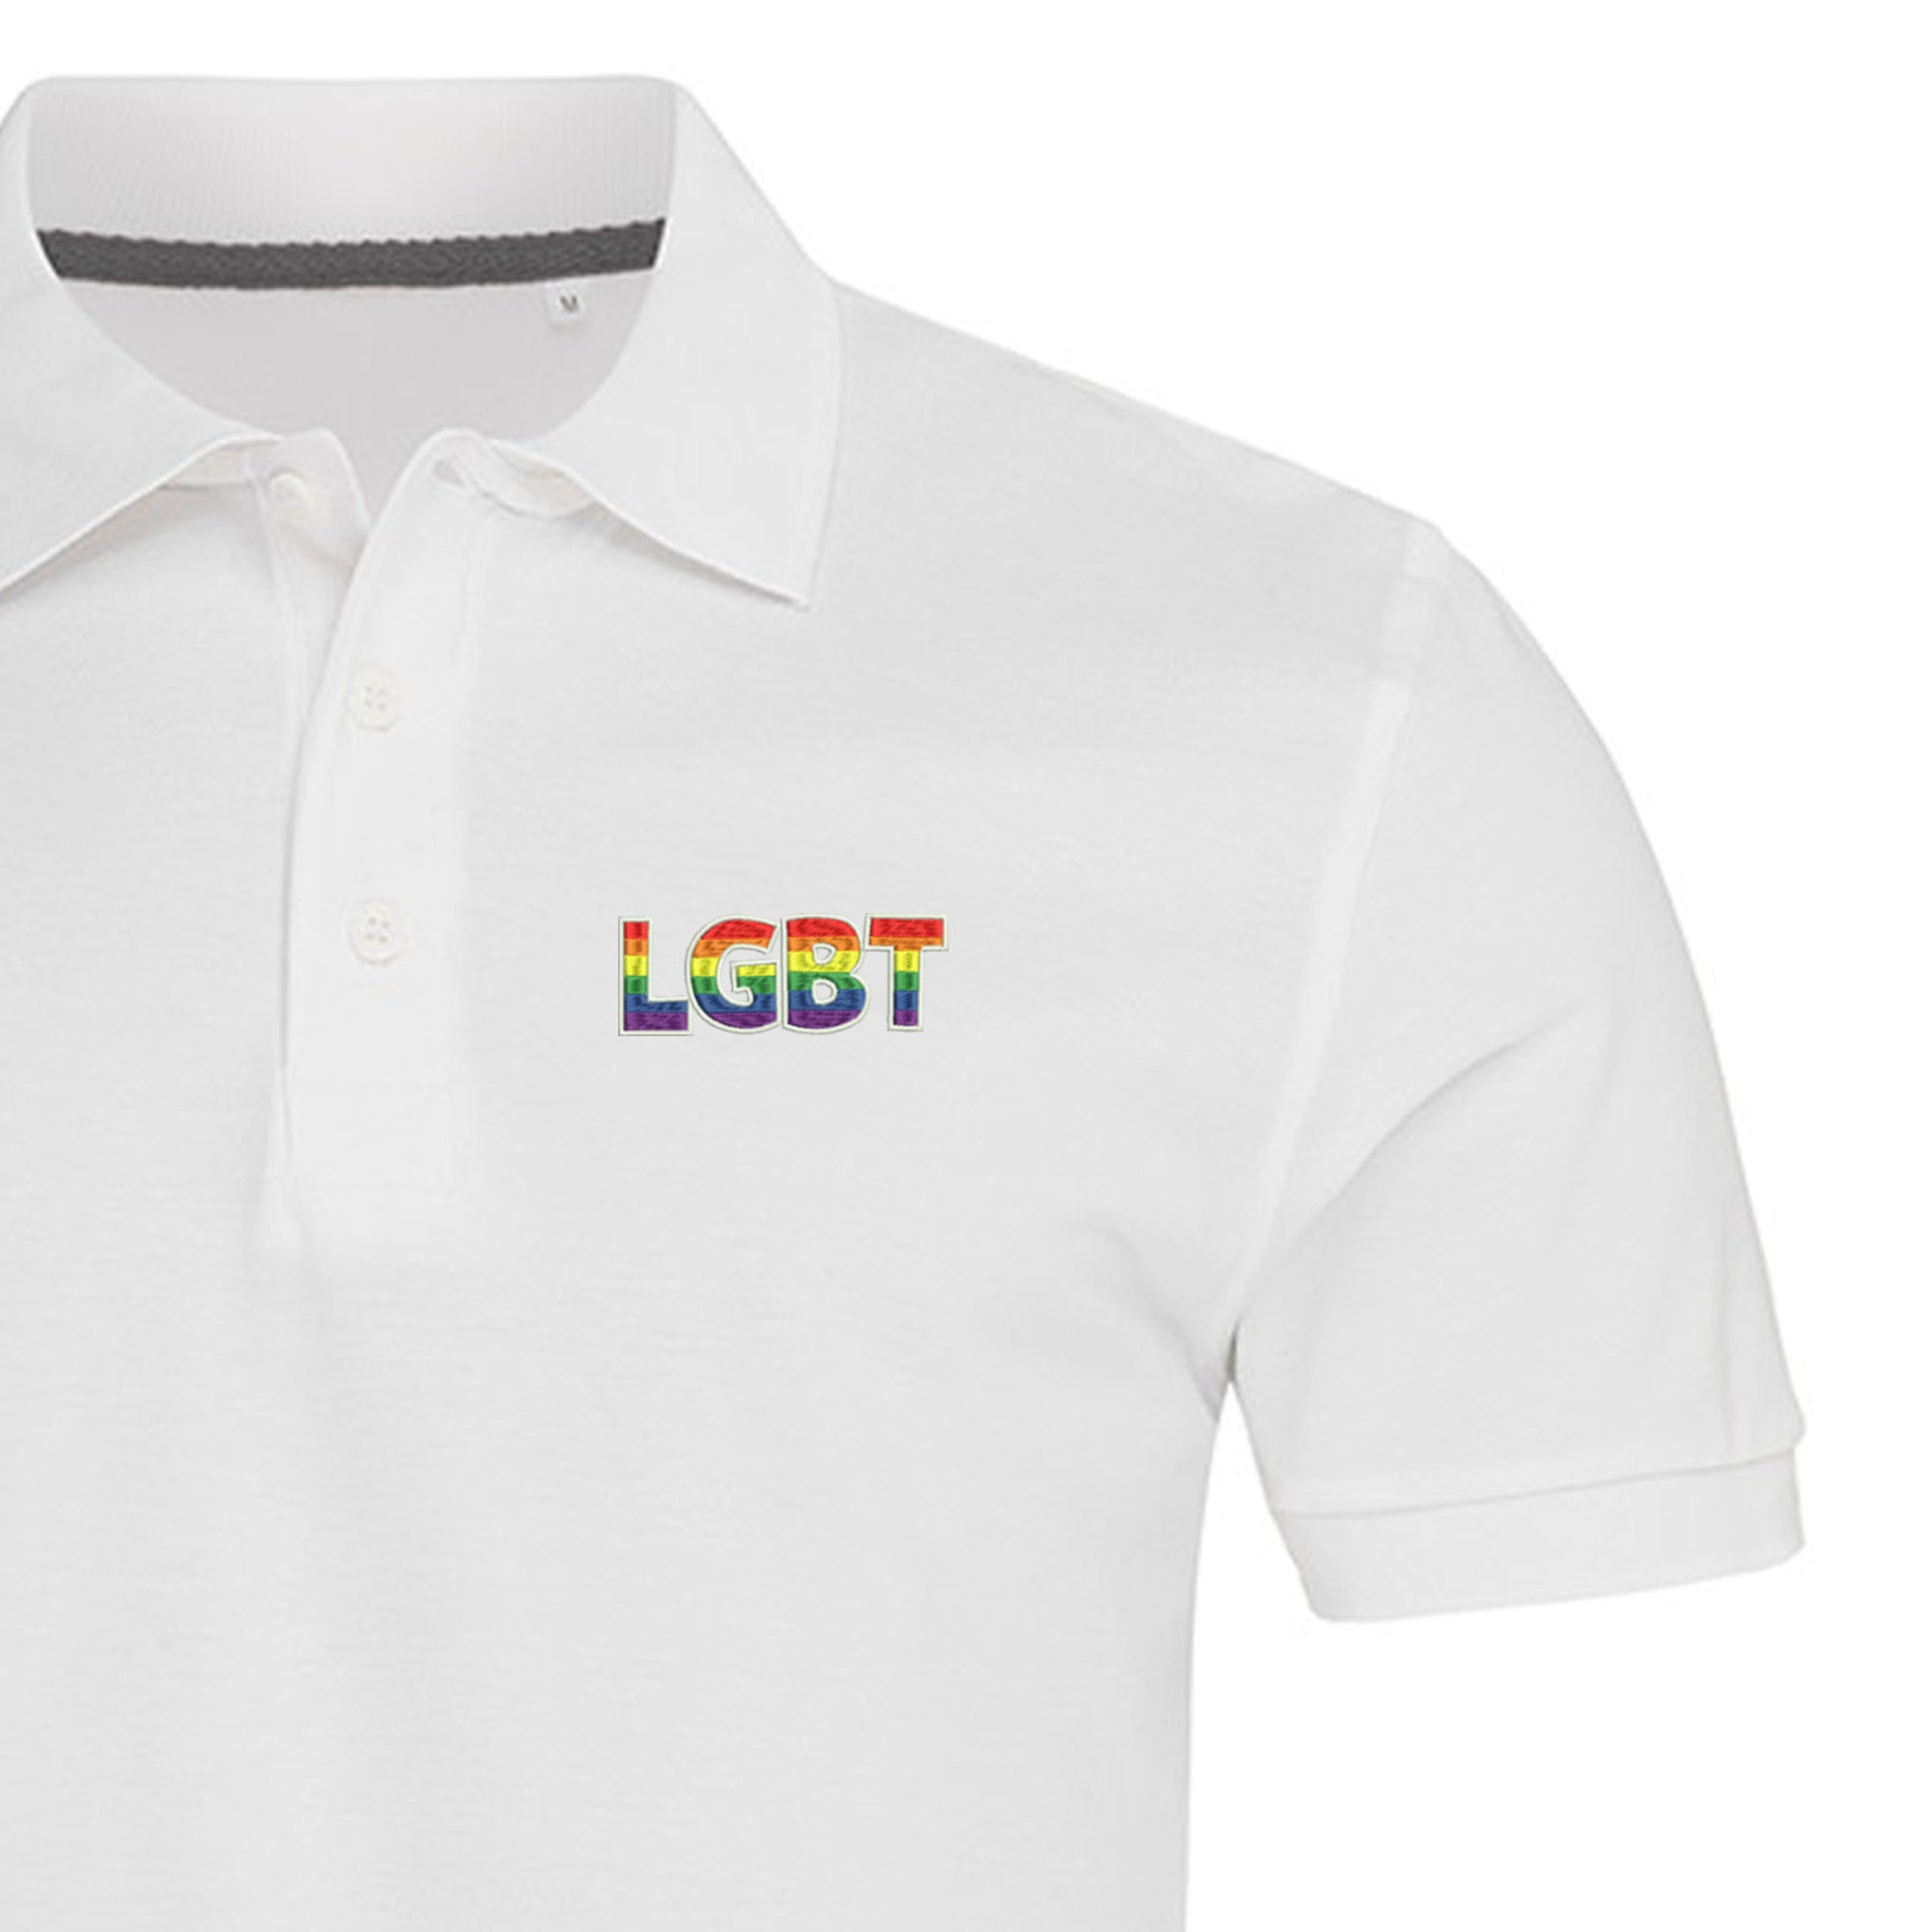 Discover LGBT Polo Shirt For Man | Pride Poloshirt